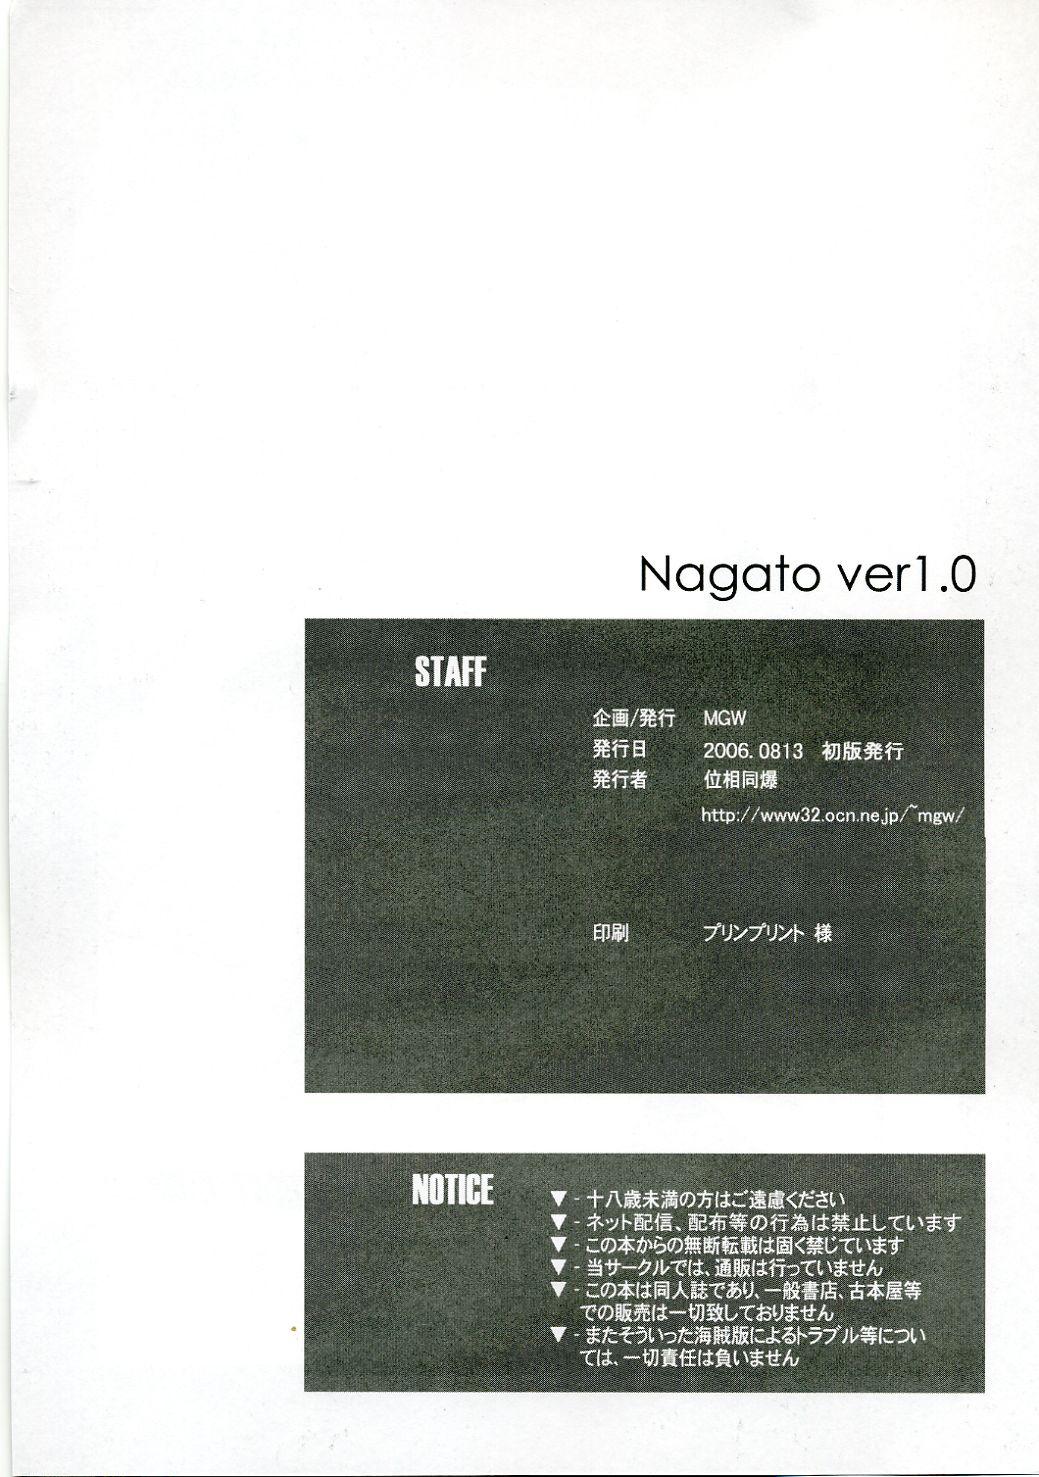 Nagato 24